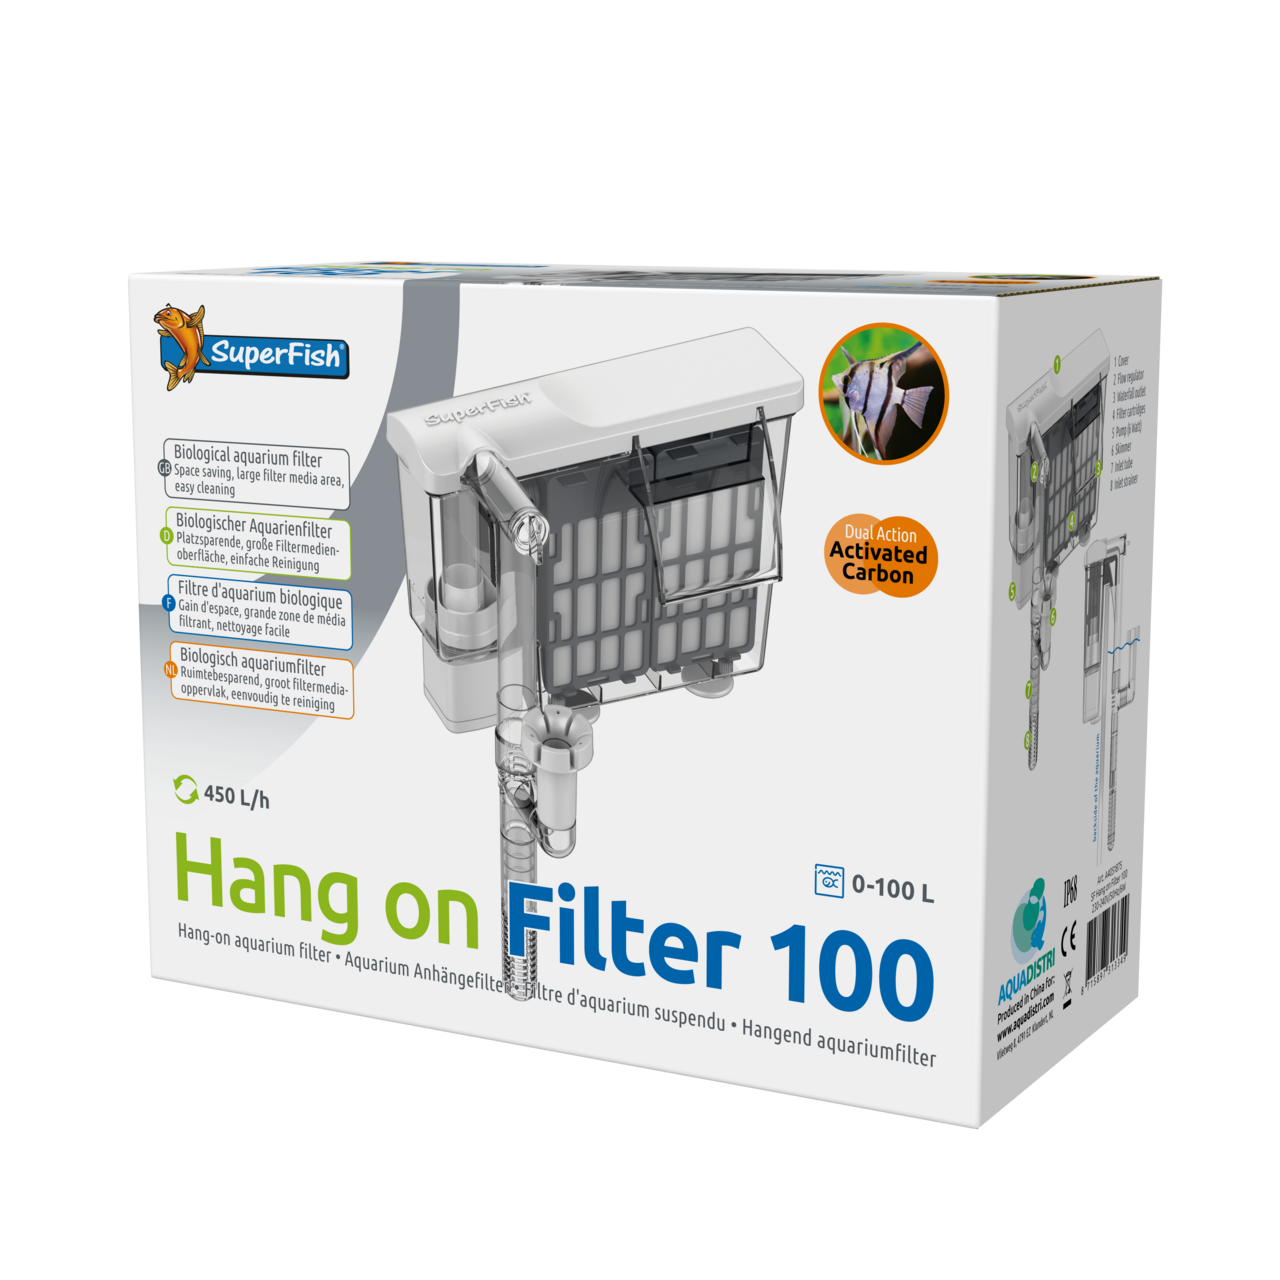 Super Fish – Hang on Filter 100 / 0-100lt,6w, 2pcs